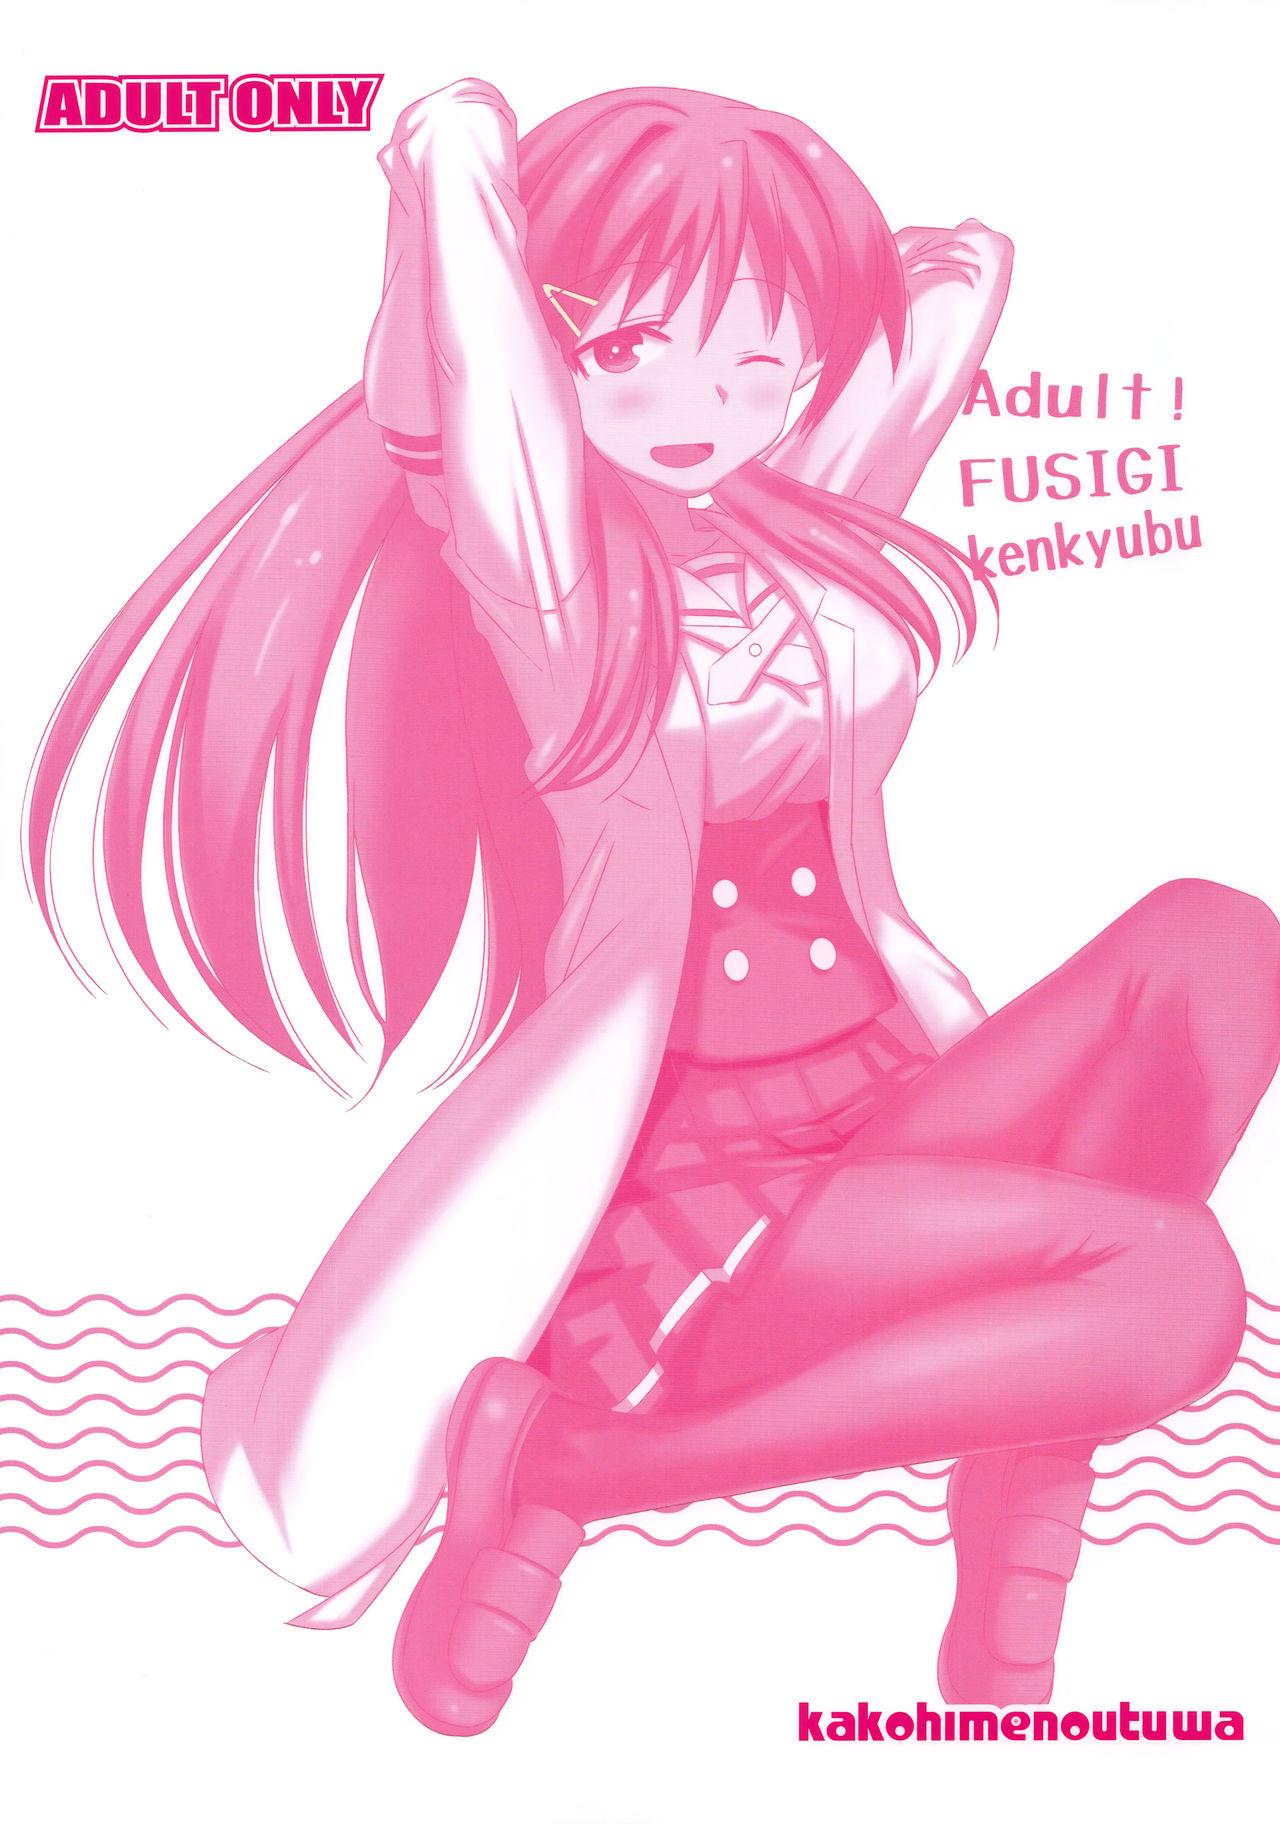 Adult! Fushigi Kenkyuubu 18